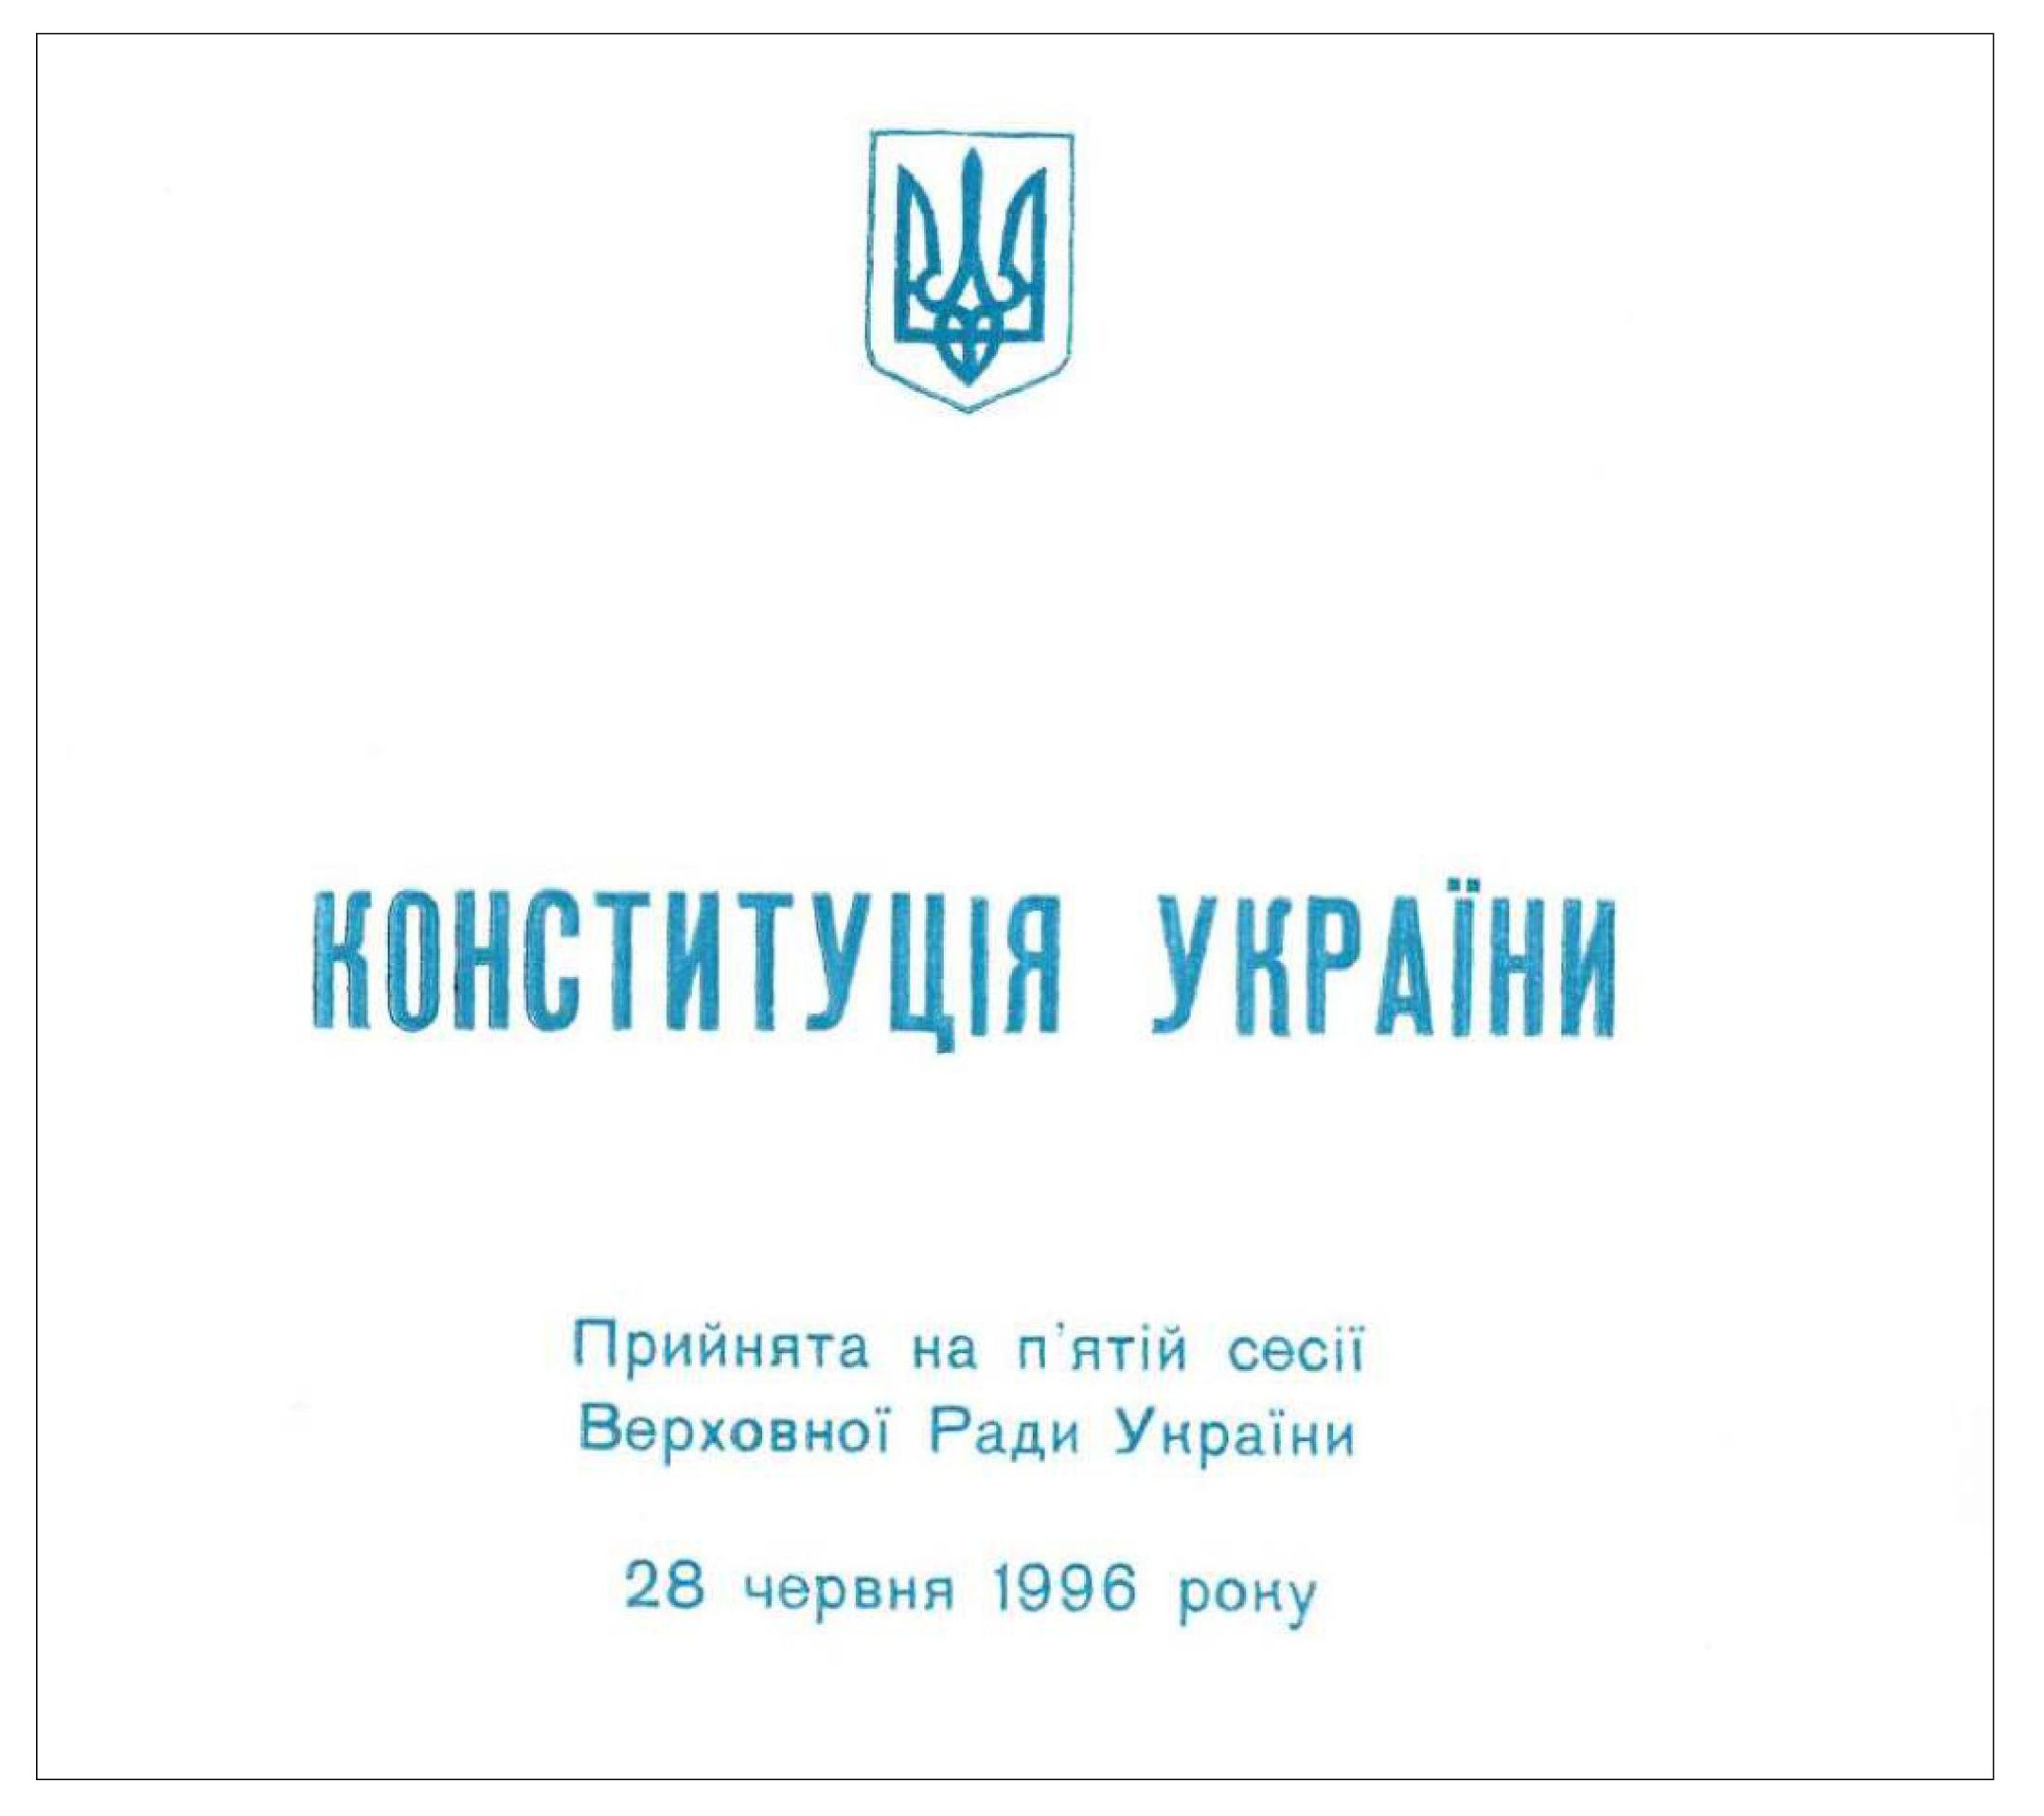 Конституція України, прийнята на п’ятій сесії Верховної Ради України